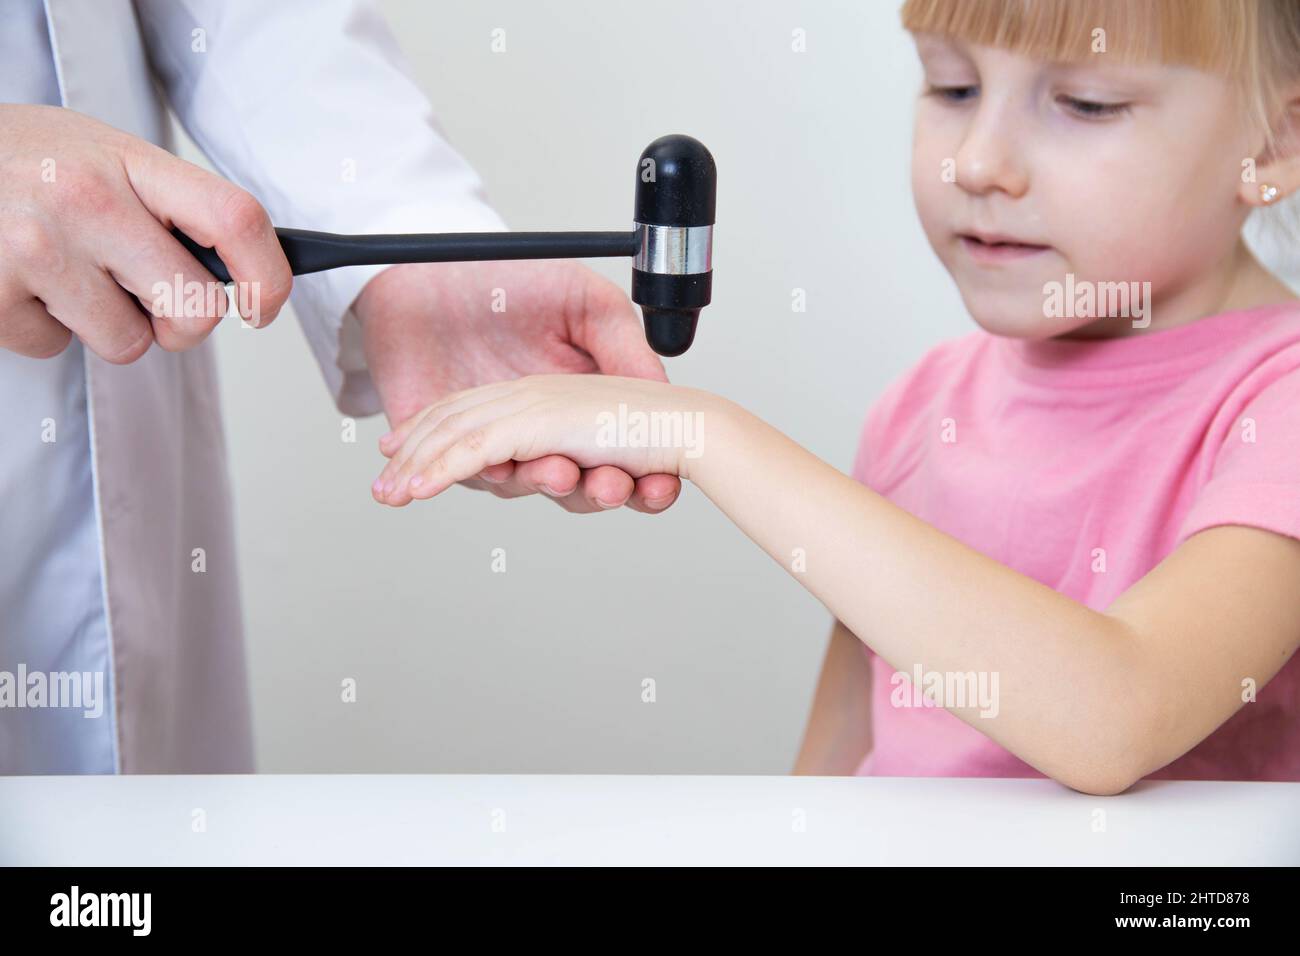 Un neuropathologiste vérifie les réflexes sur le poignet d'une petite fille de 5 ans. Banque D'Images